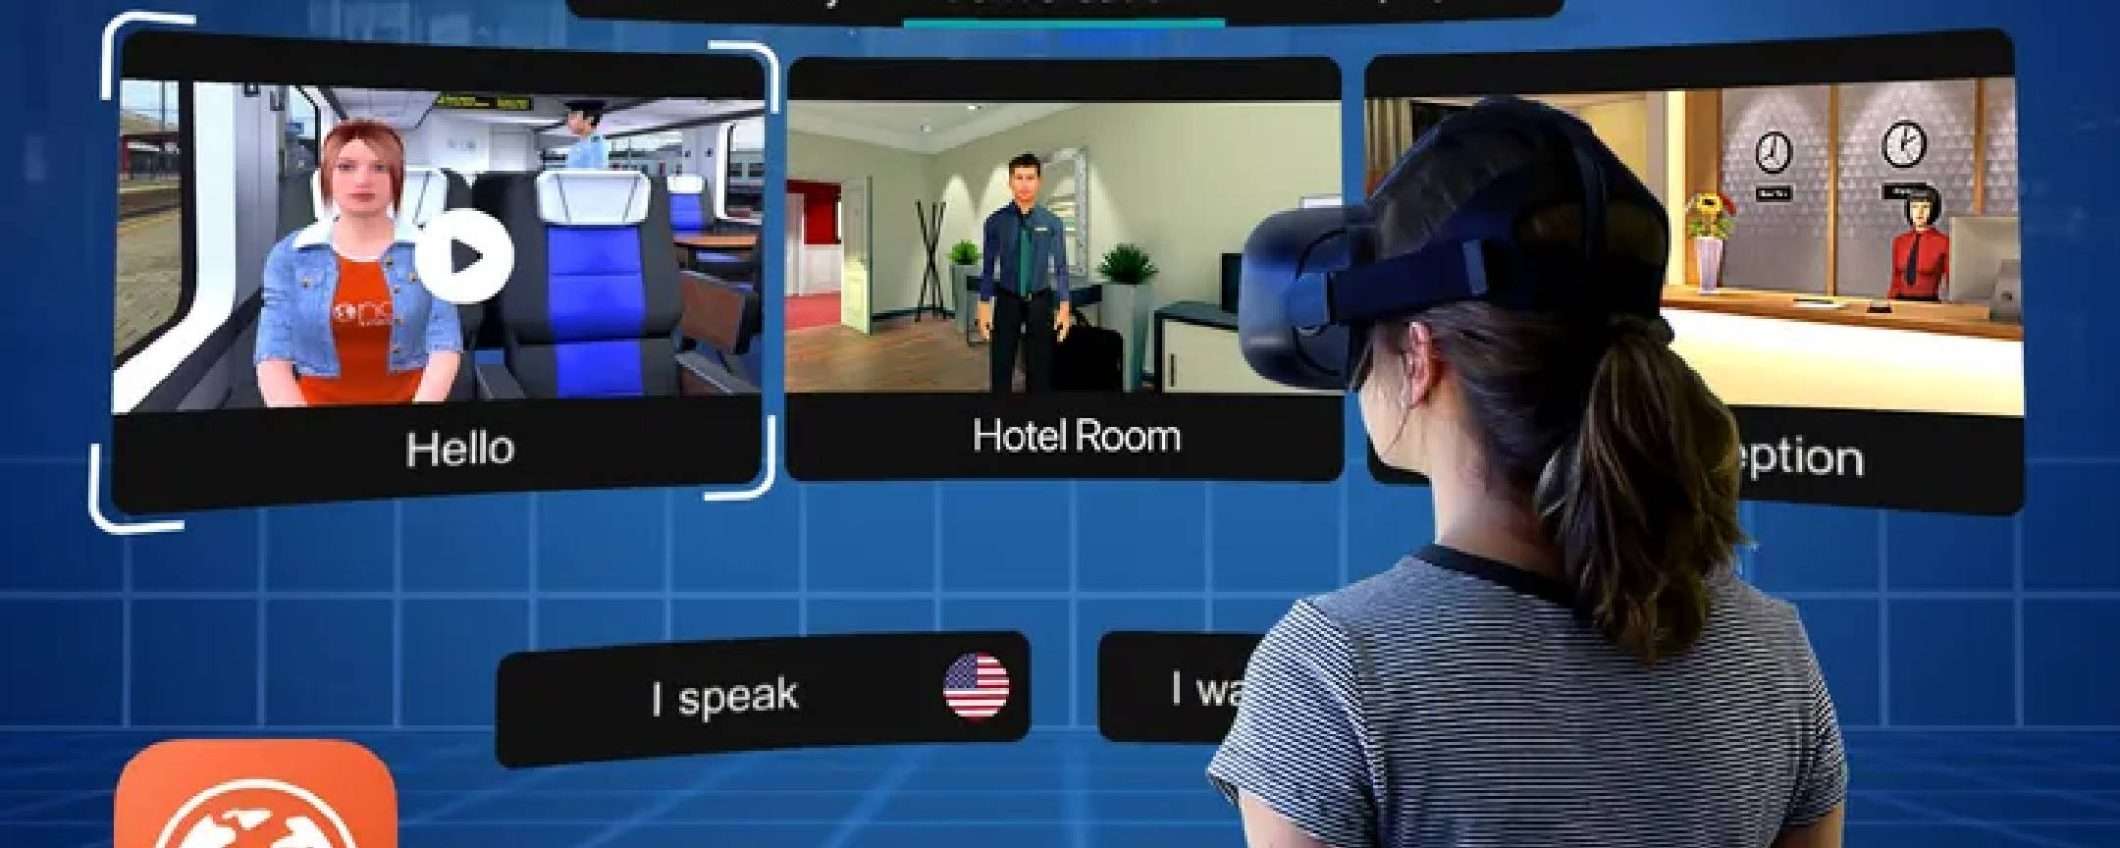 Mondly: realtà virtuale per l'apprendimento linguistico